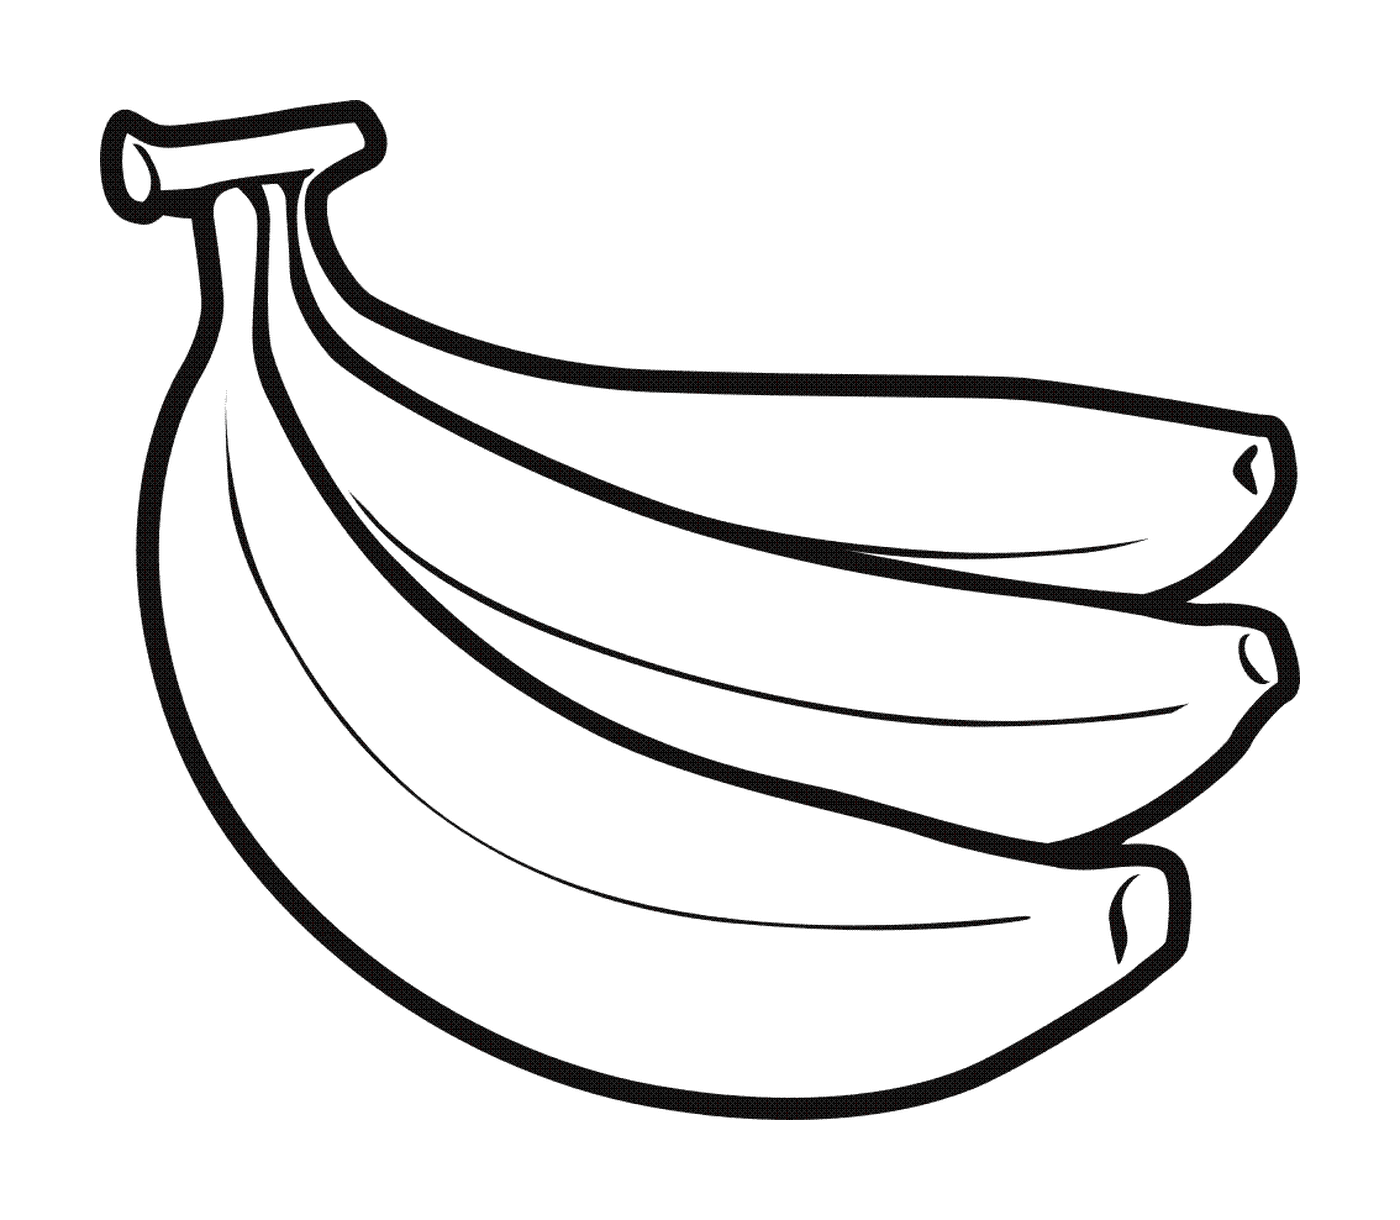  地面上的成熟香蕉 